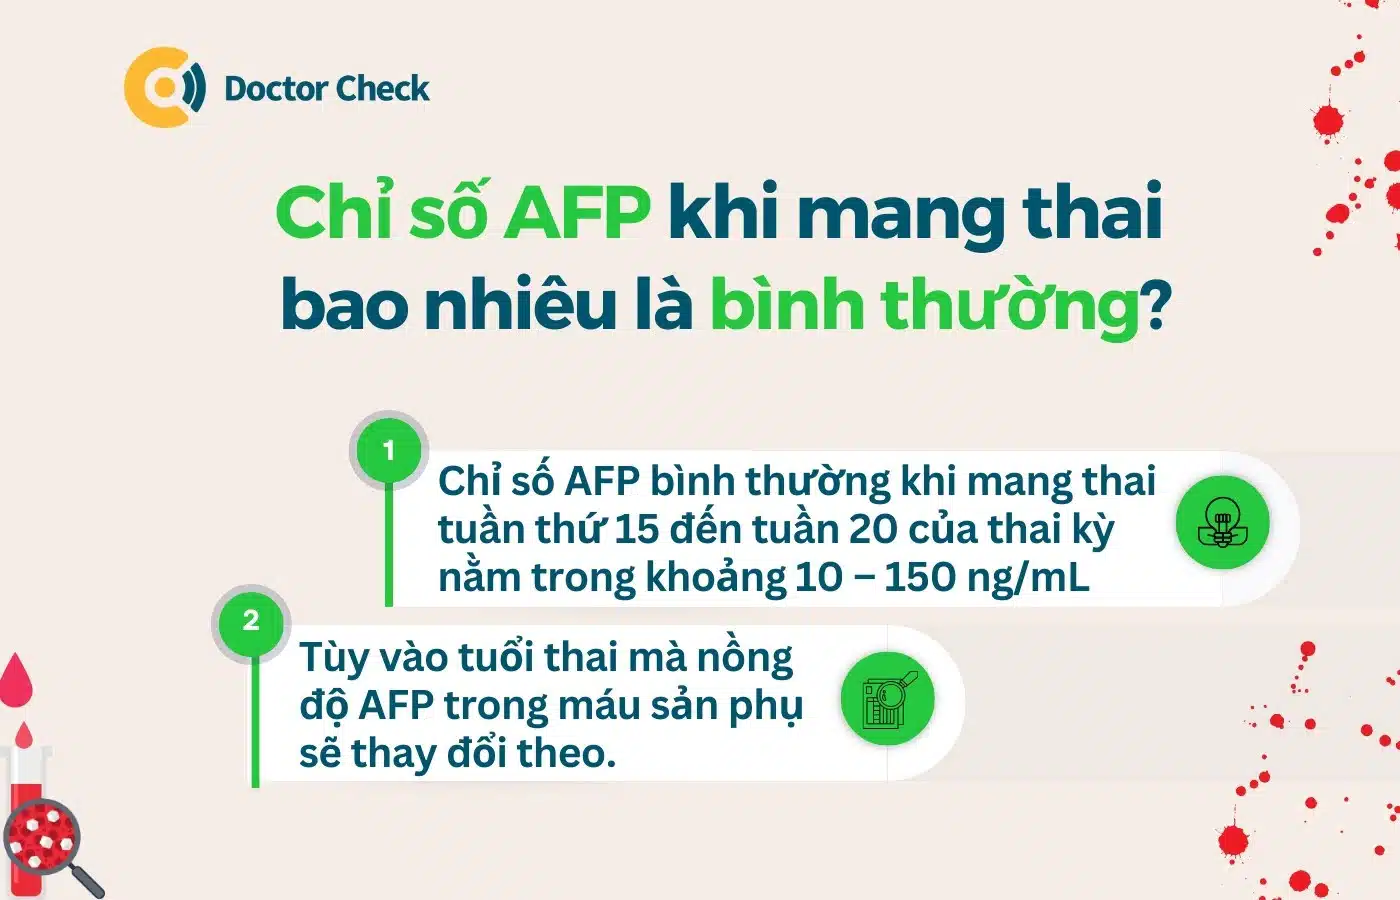 Chỉ số AFP trong máu khi mang thai bao nhiêu là bình thường?